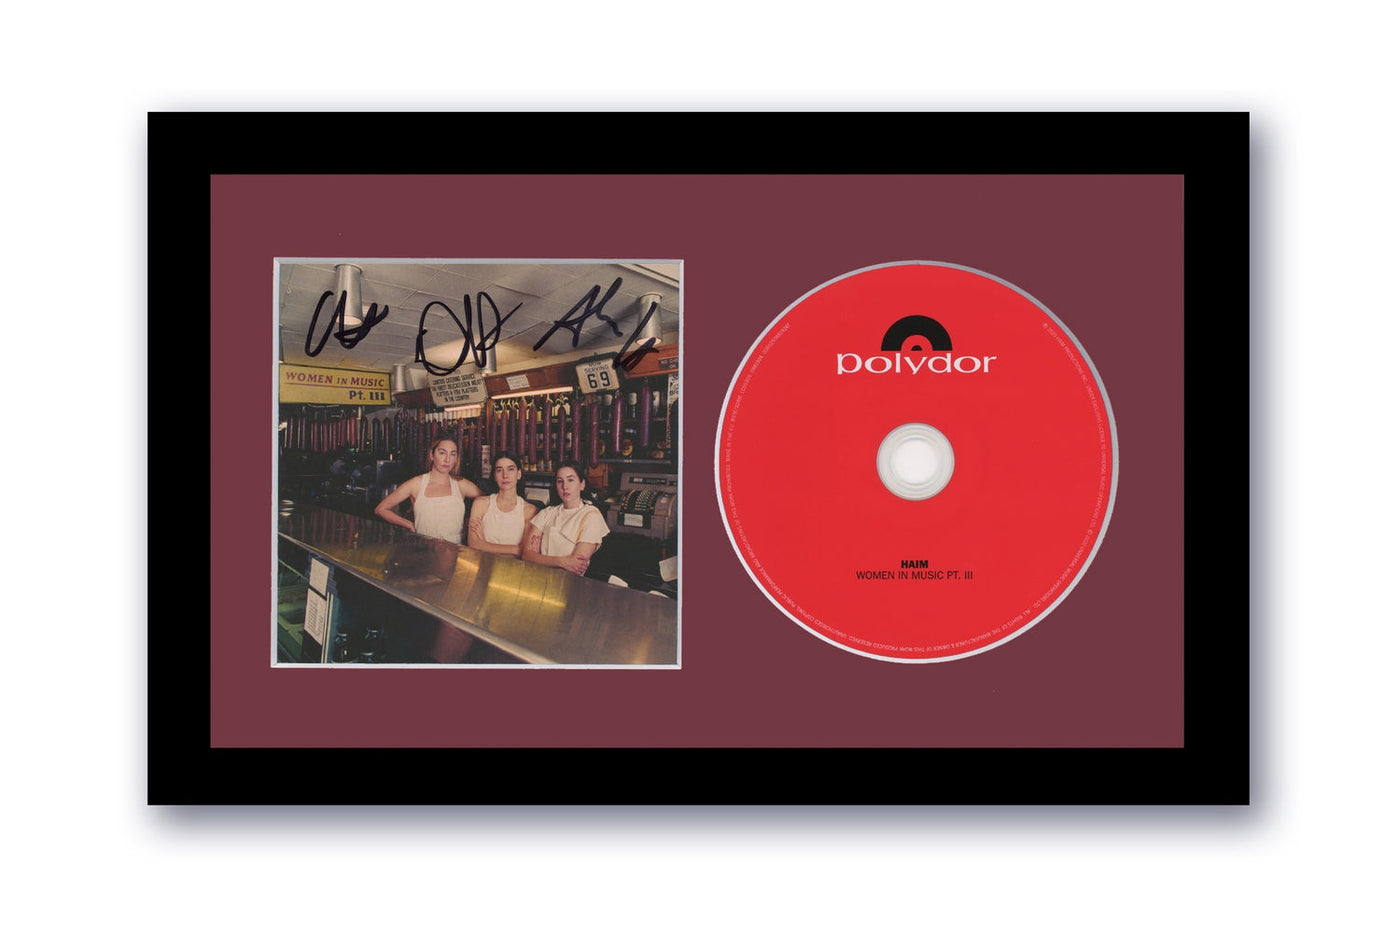 Haim Autographed Signed 7x12 Custom Framed CD Women In Music Pt. III ACOA